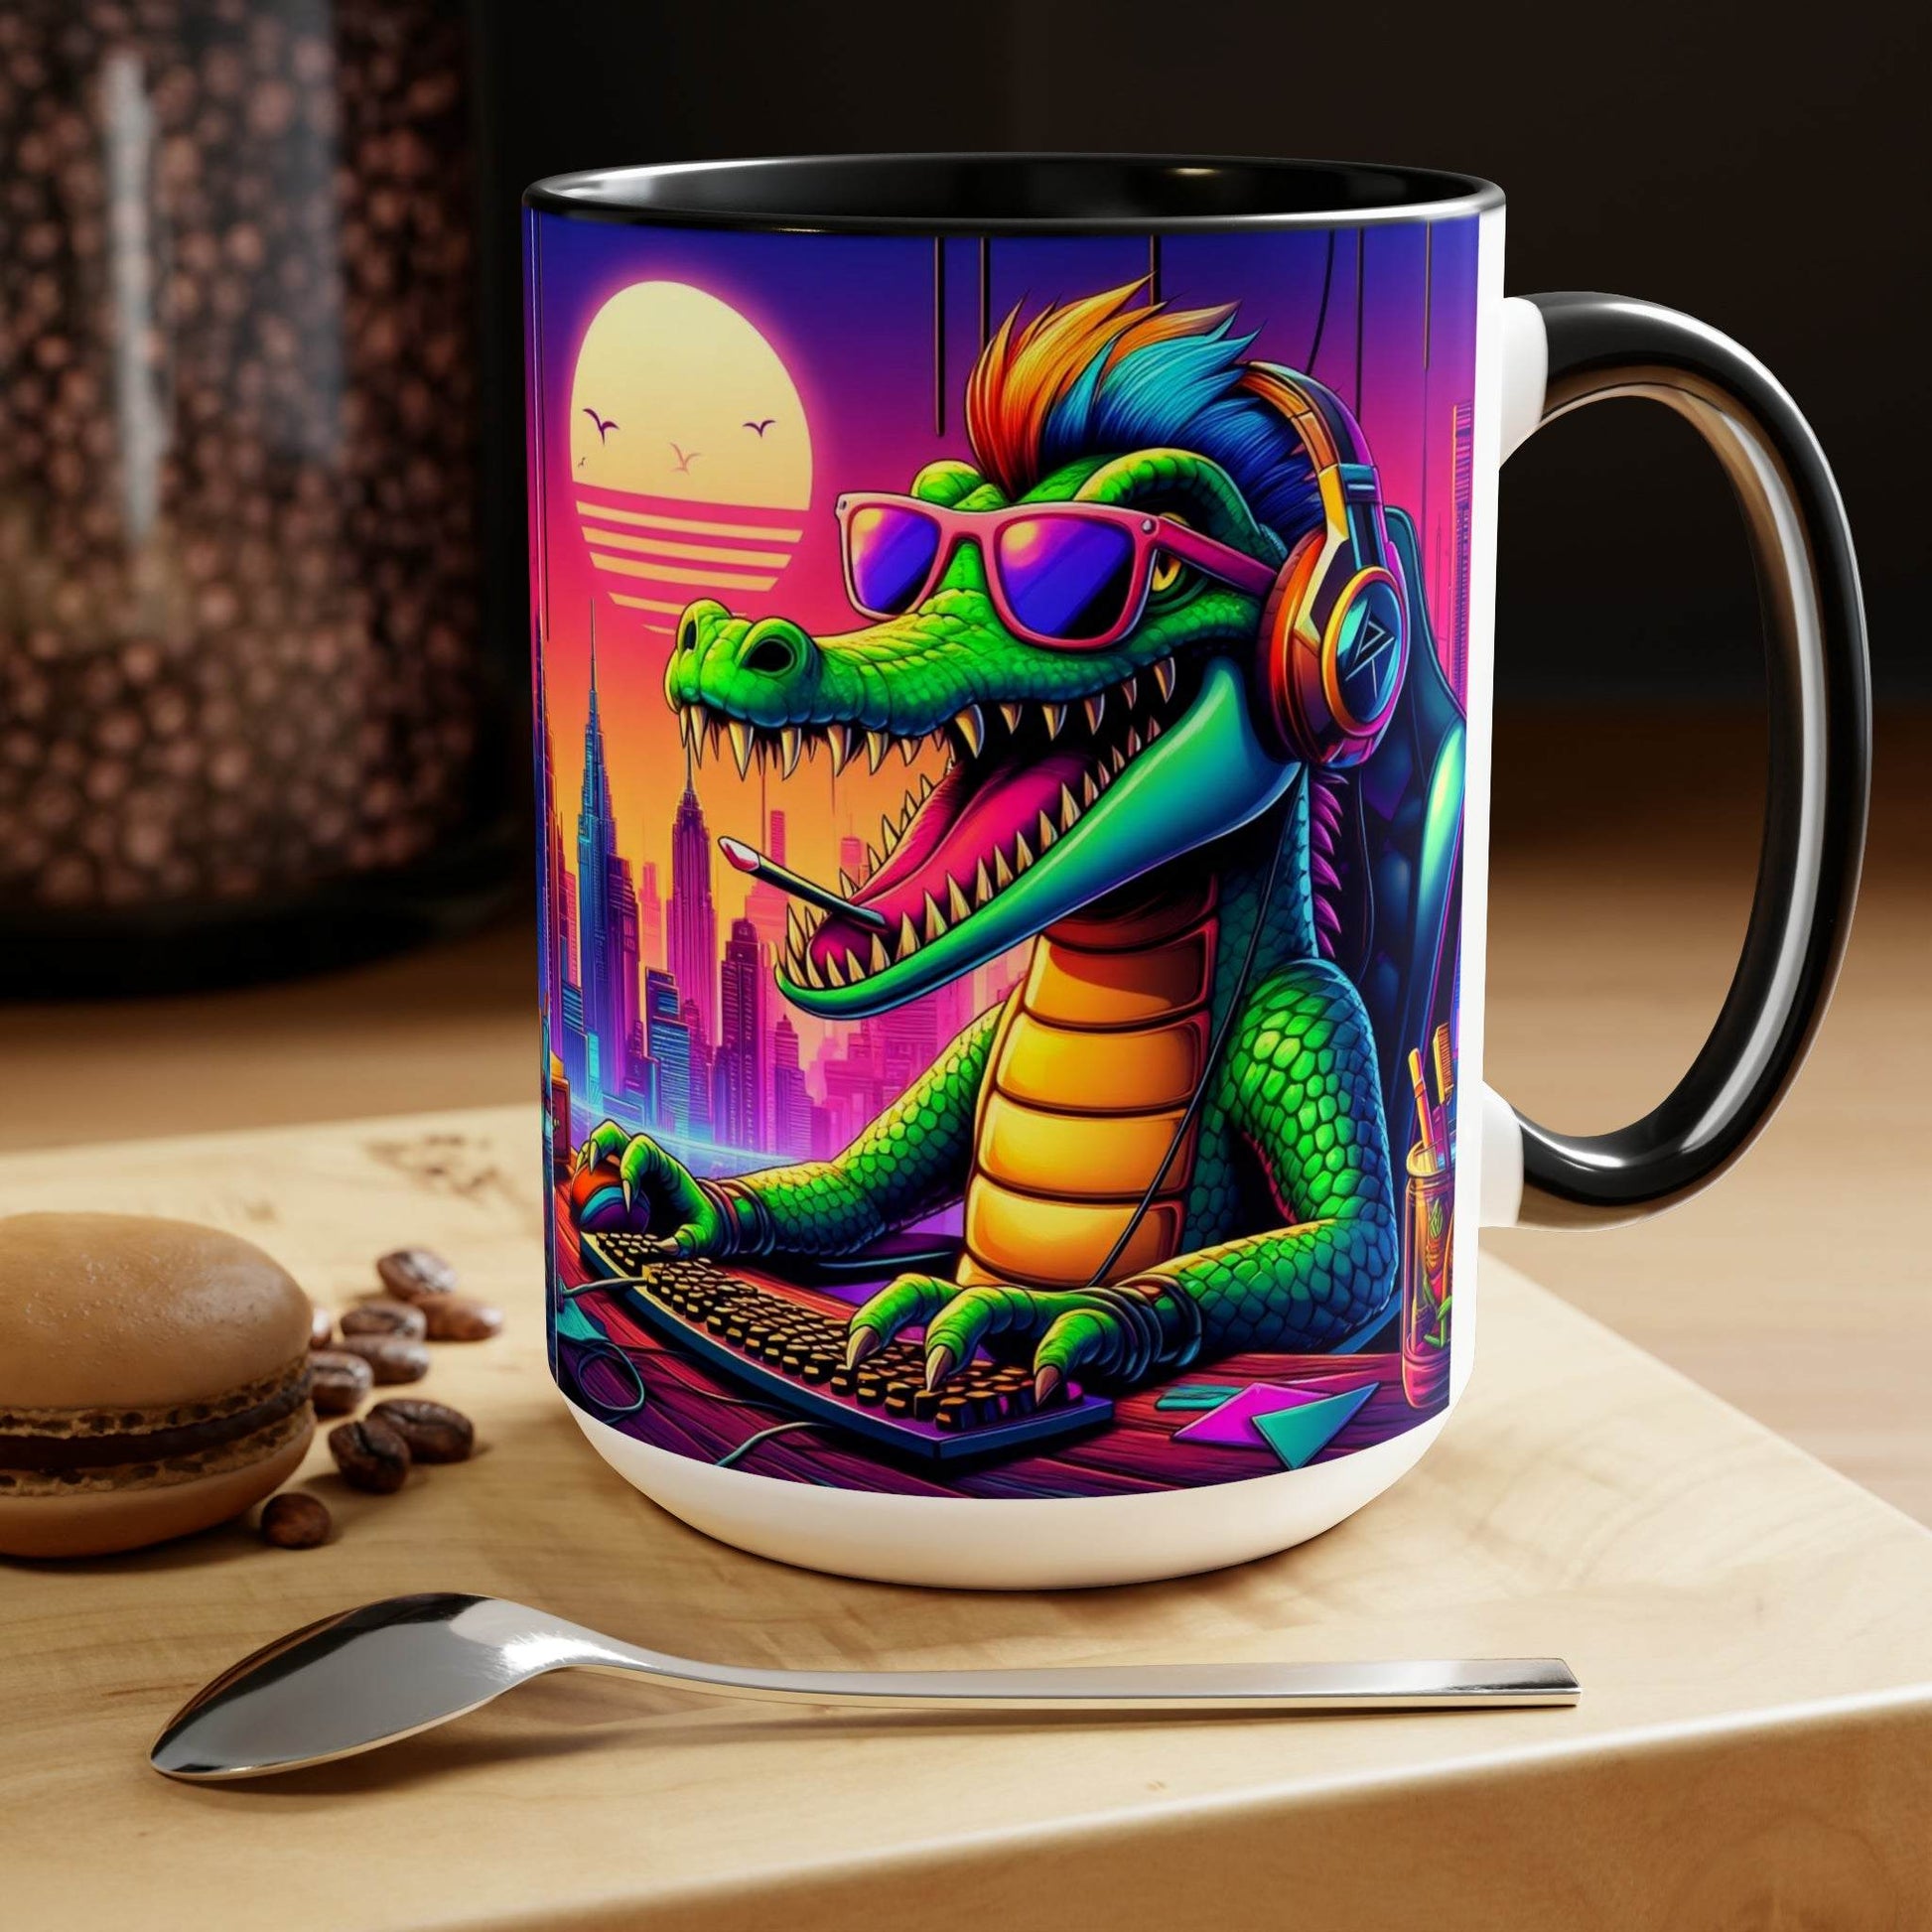 gaming mug, crocodile mug